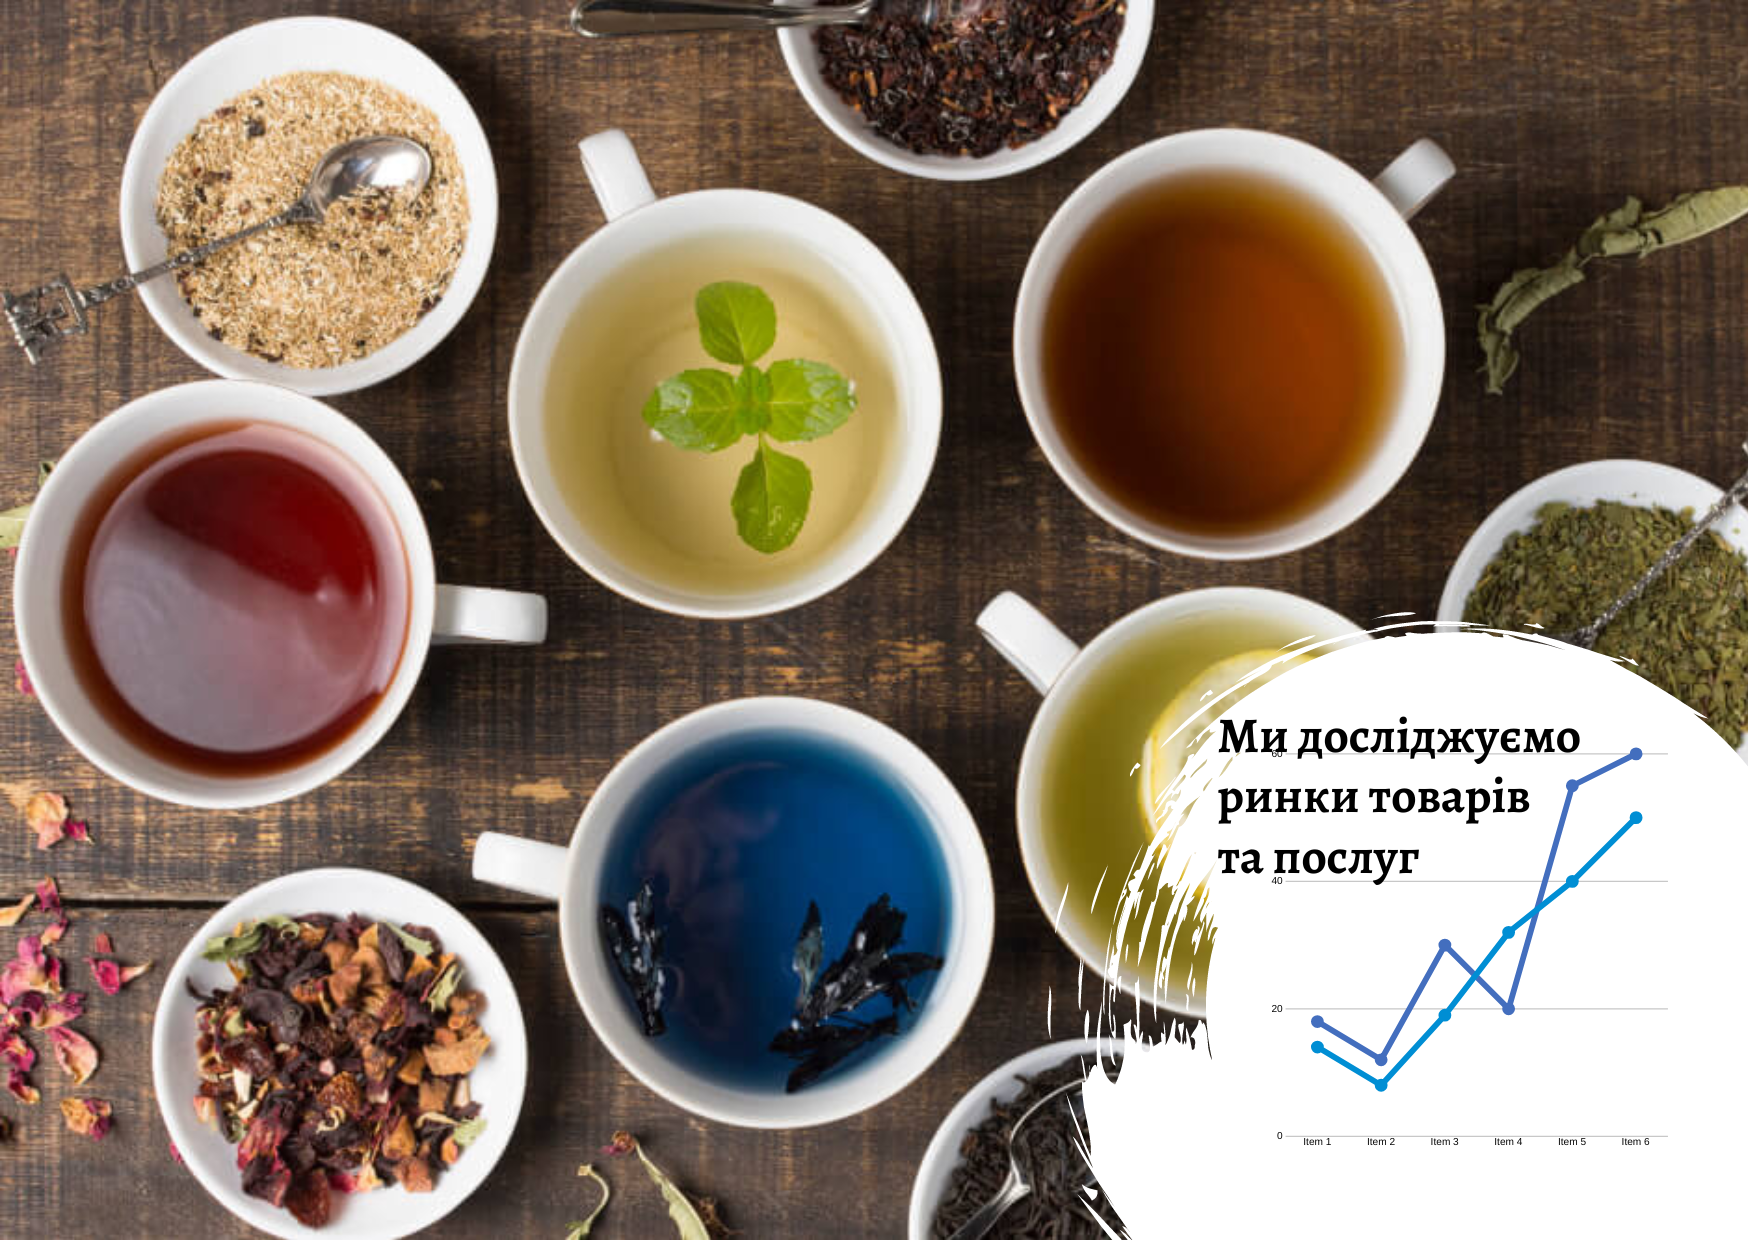 Рынок чая в Украине – Pro-Consulting